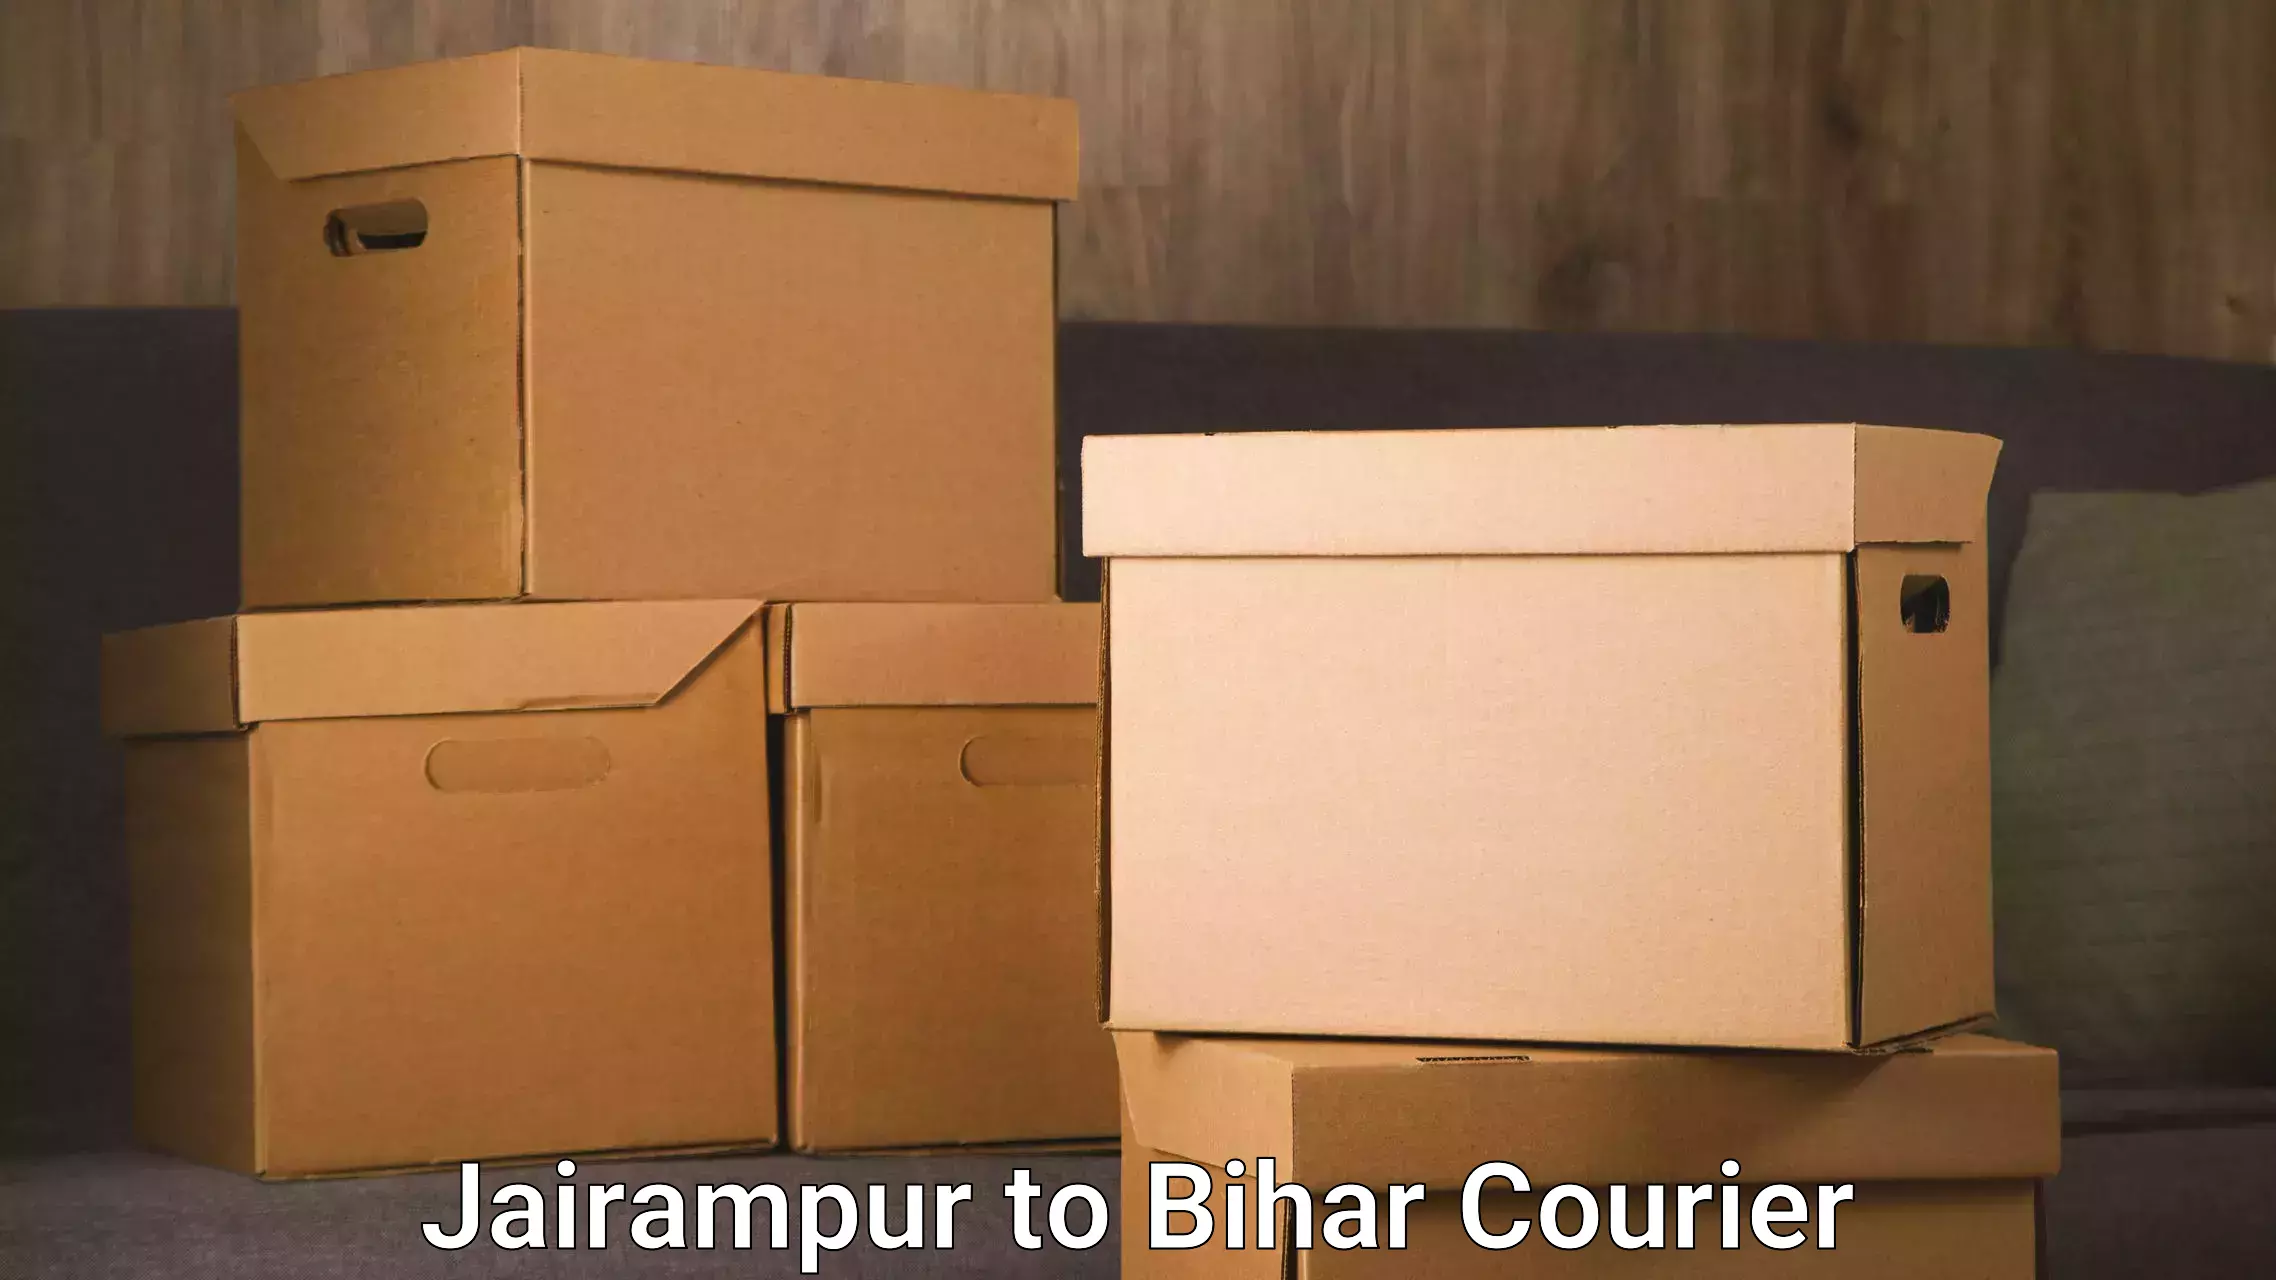 International courier networks Jairampur to Bihar